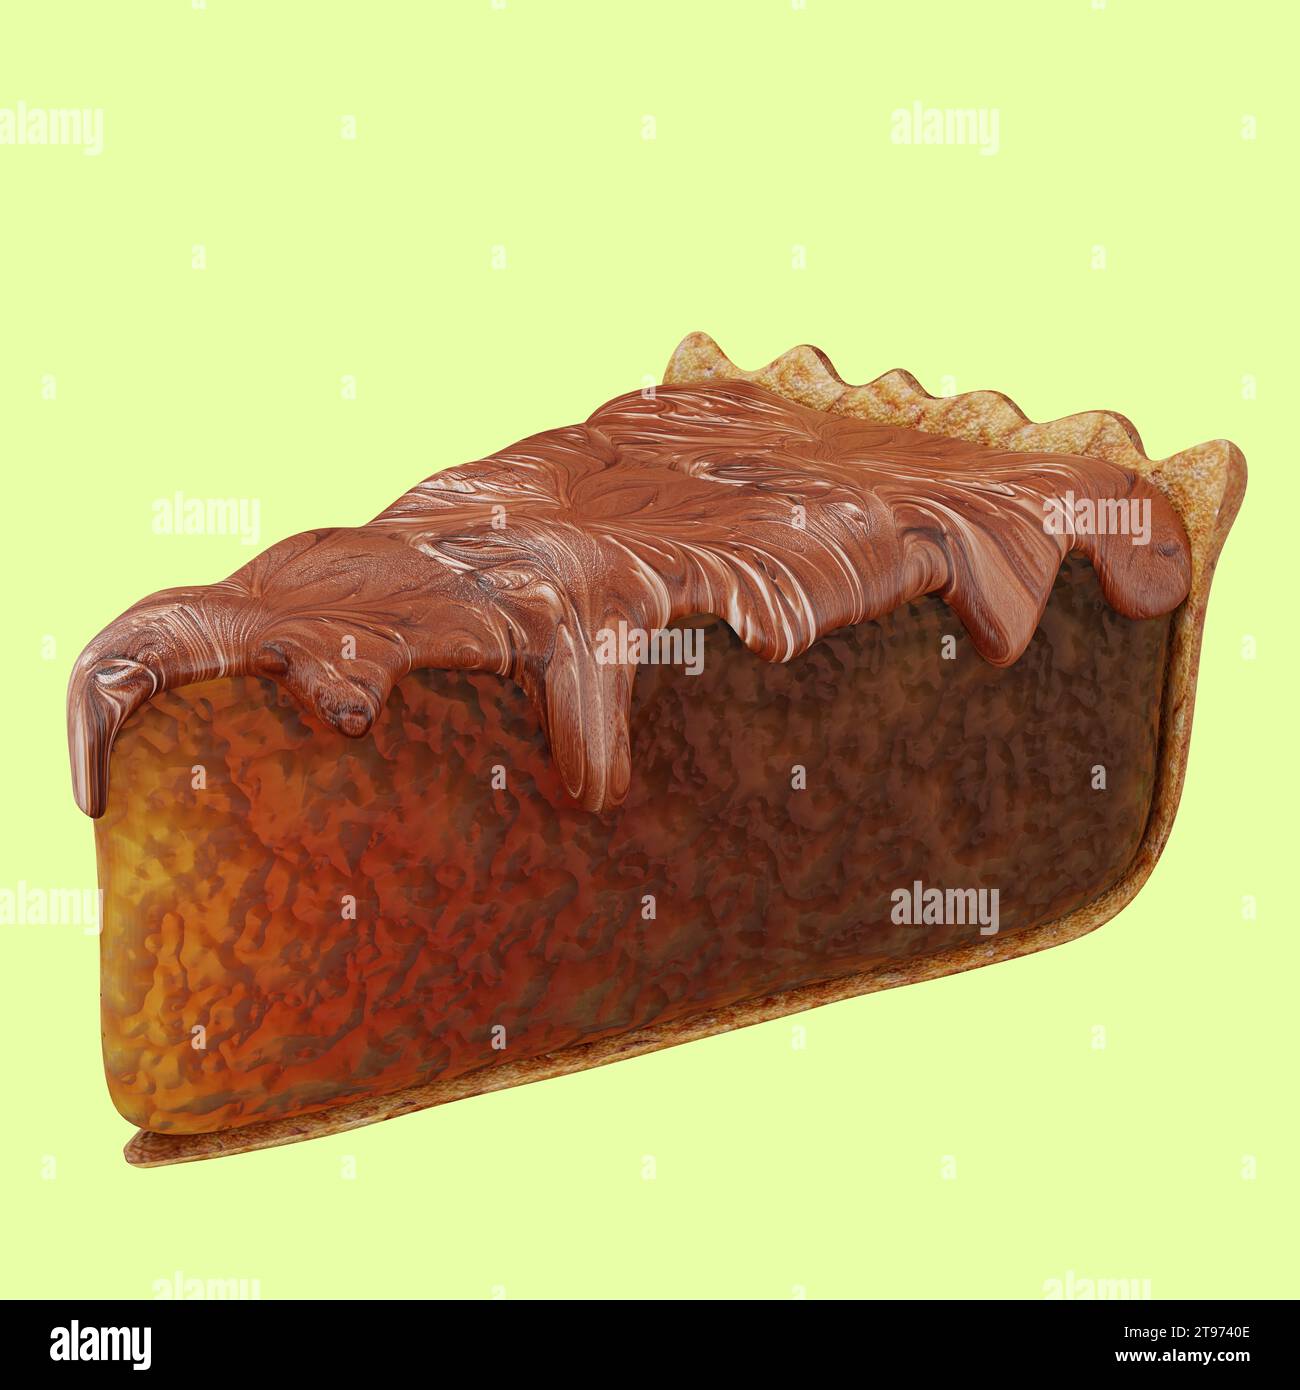 Decadente Brownie: La perfezione di Fudgy con una consistenza che si scioglie in bocca, un sogno per gli amanti del cioccolato. Foto Stock